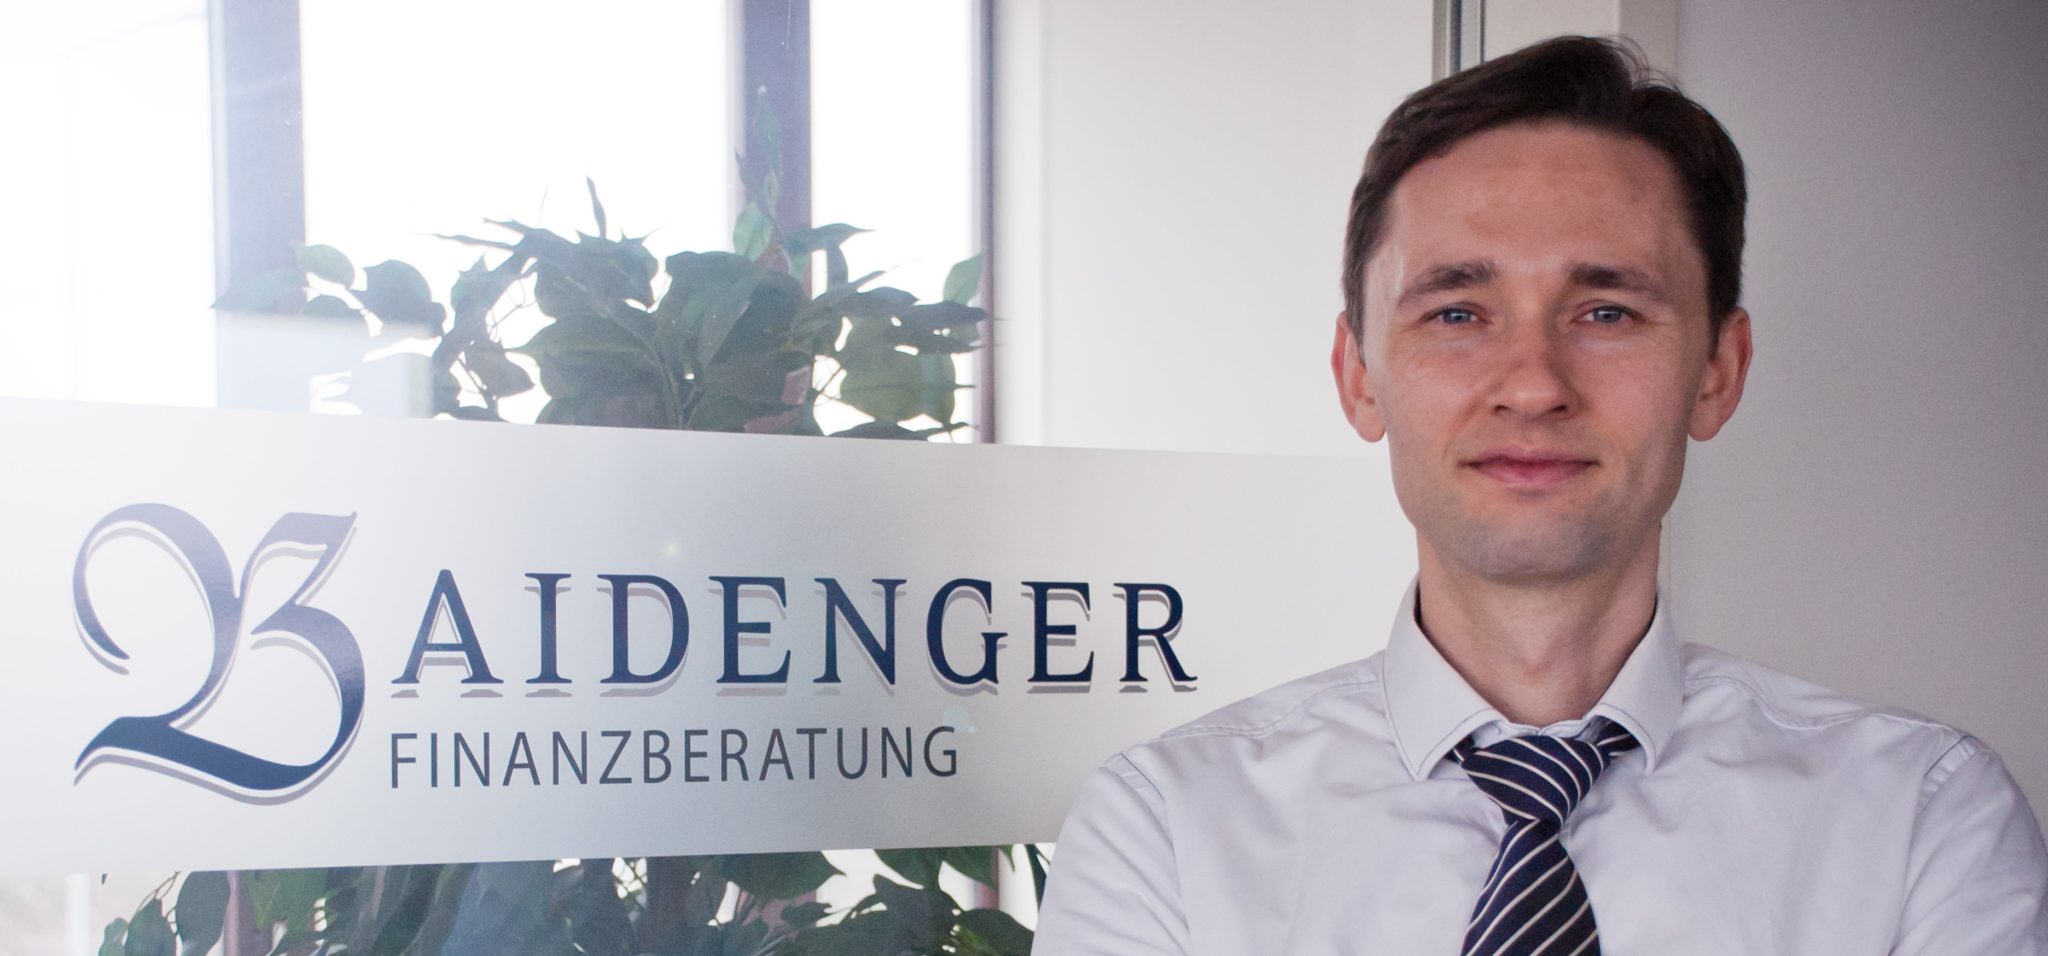 Bruno Baidenger freier Finanzberater und unabhängiger Versicherungsmakler Karlsruhe Profil Banner